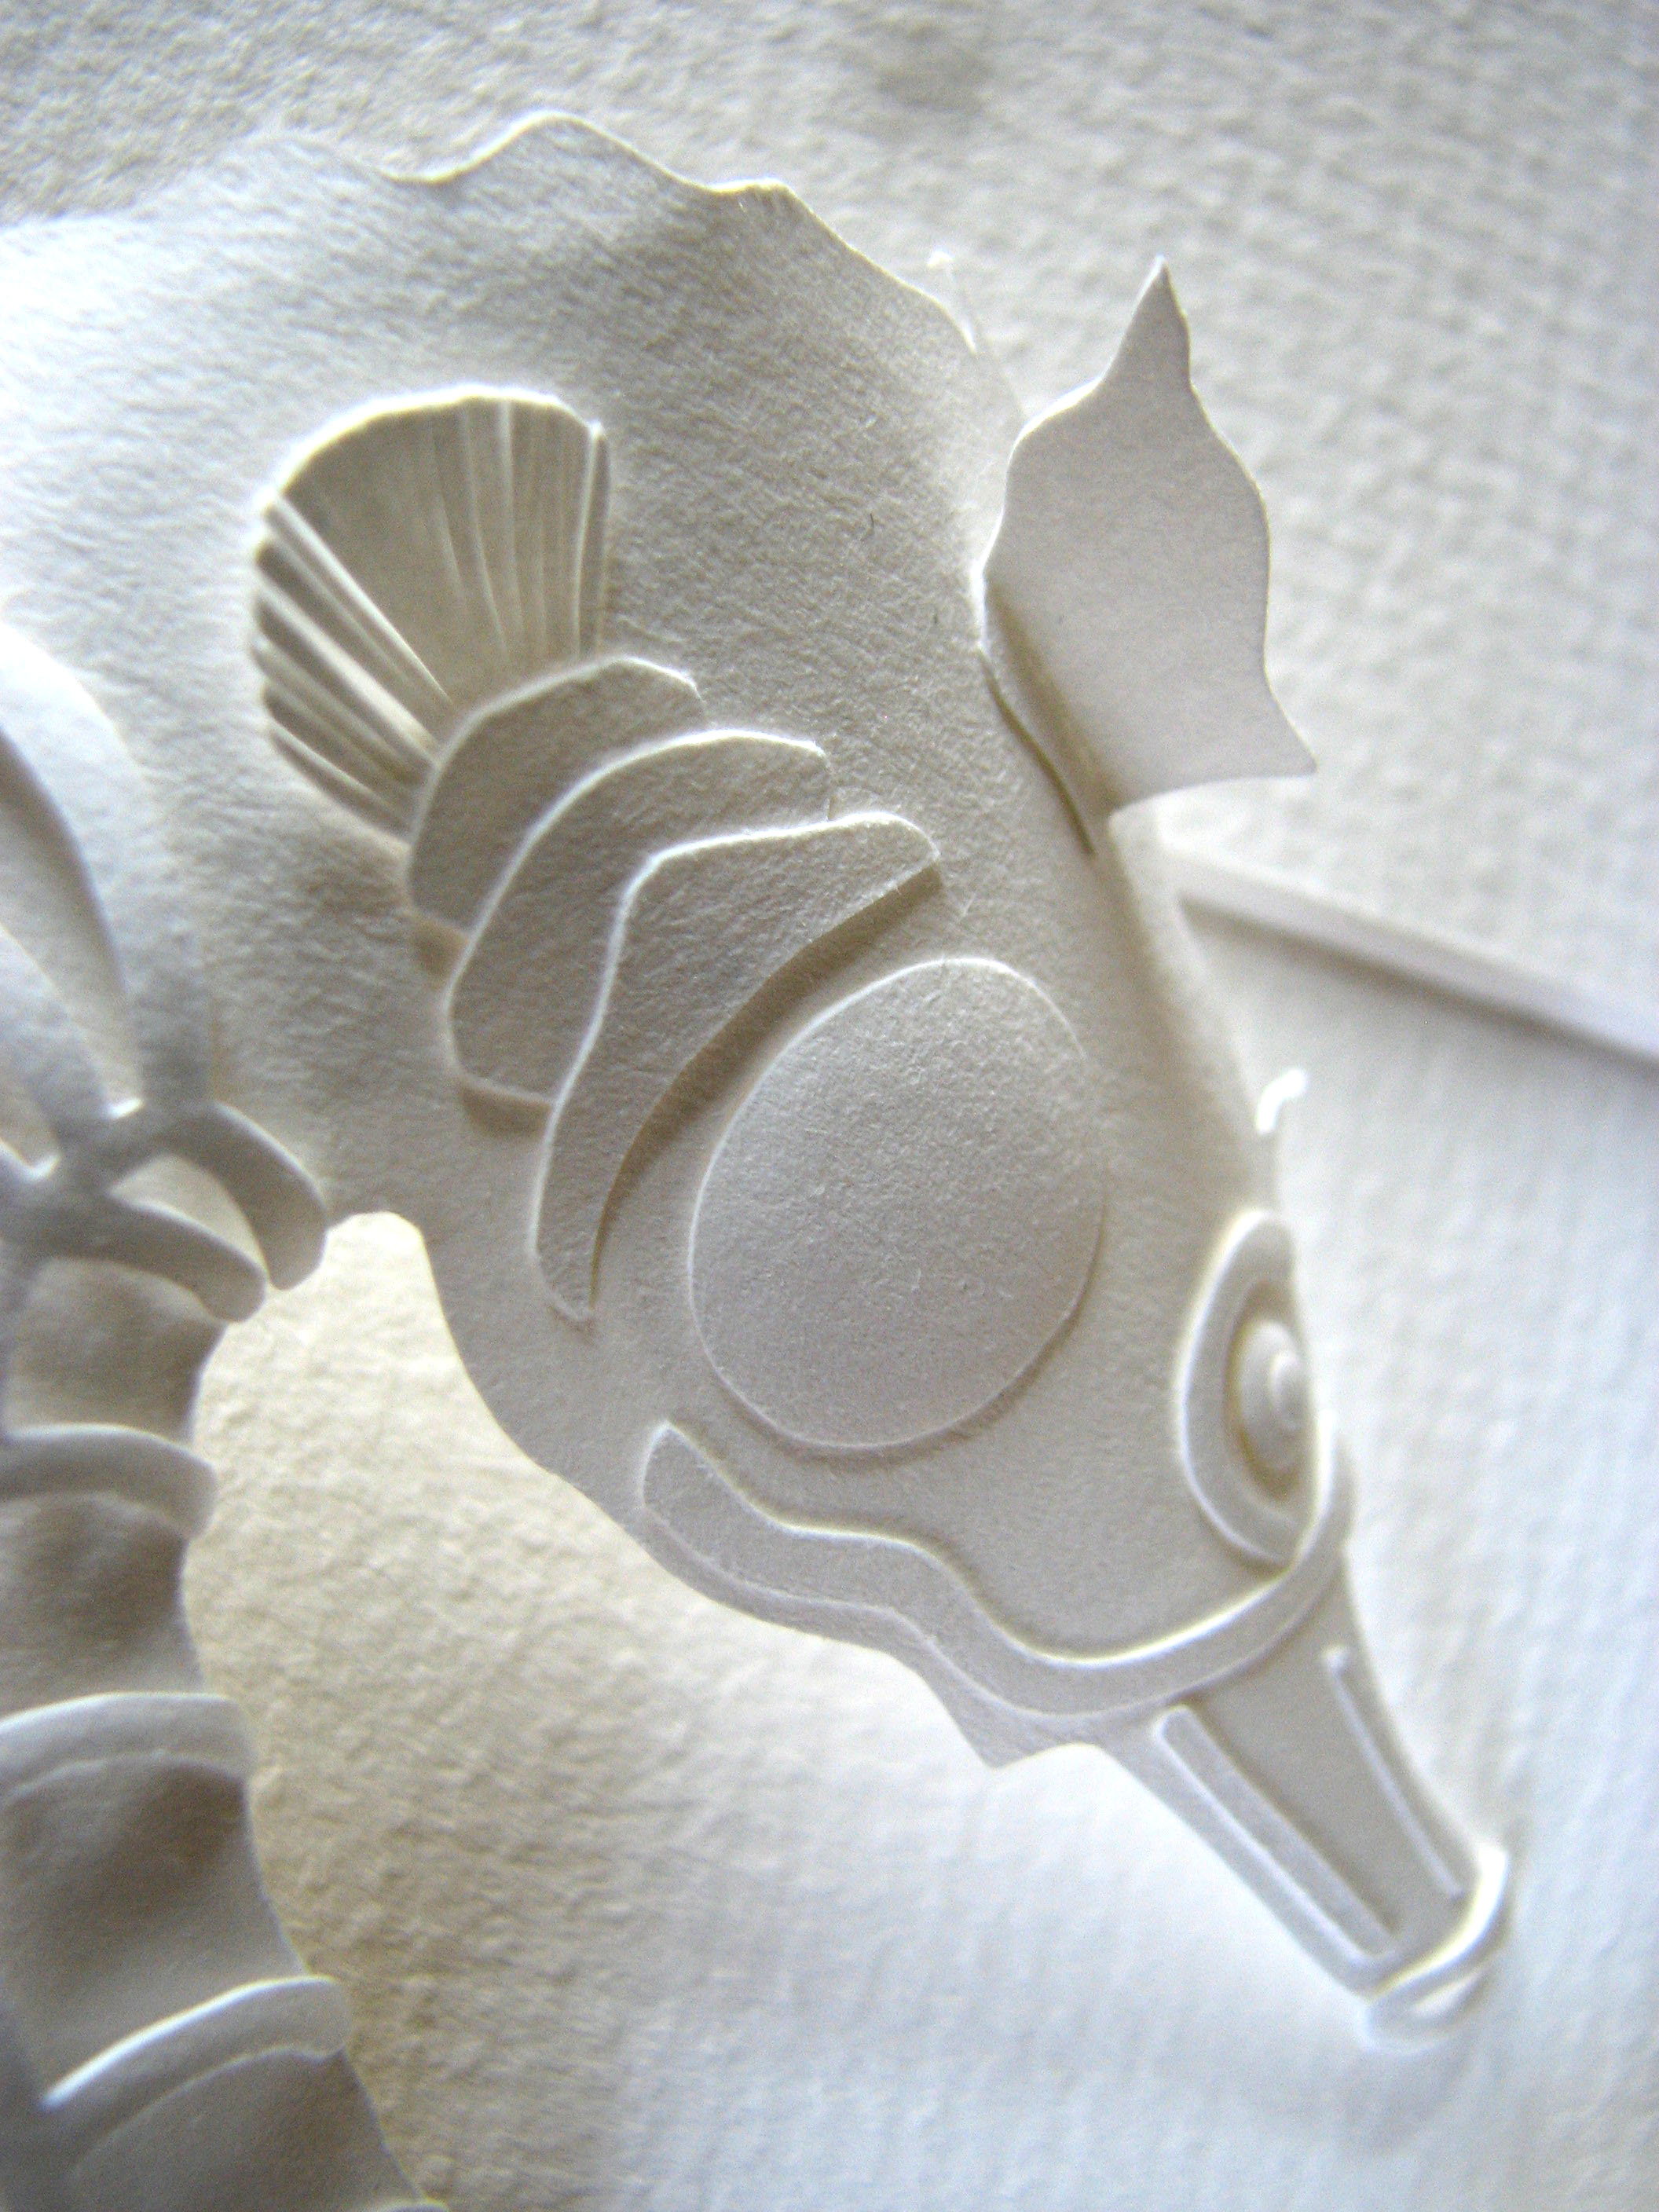 Seahorse head detail